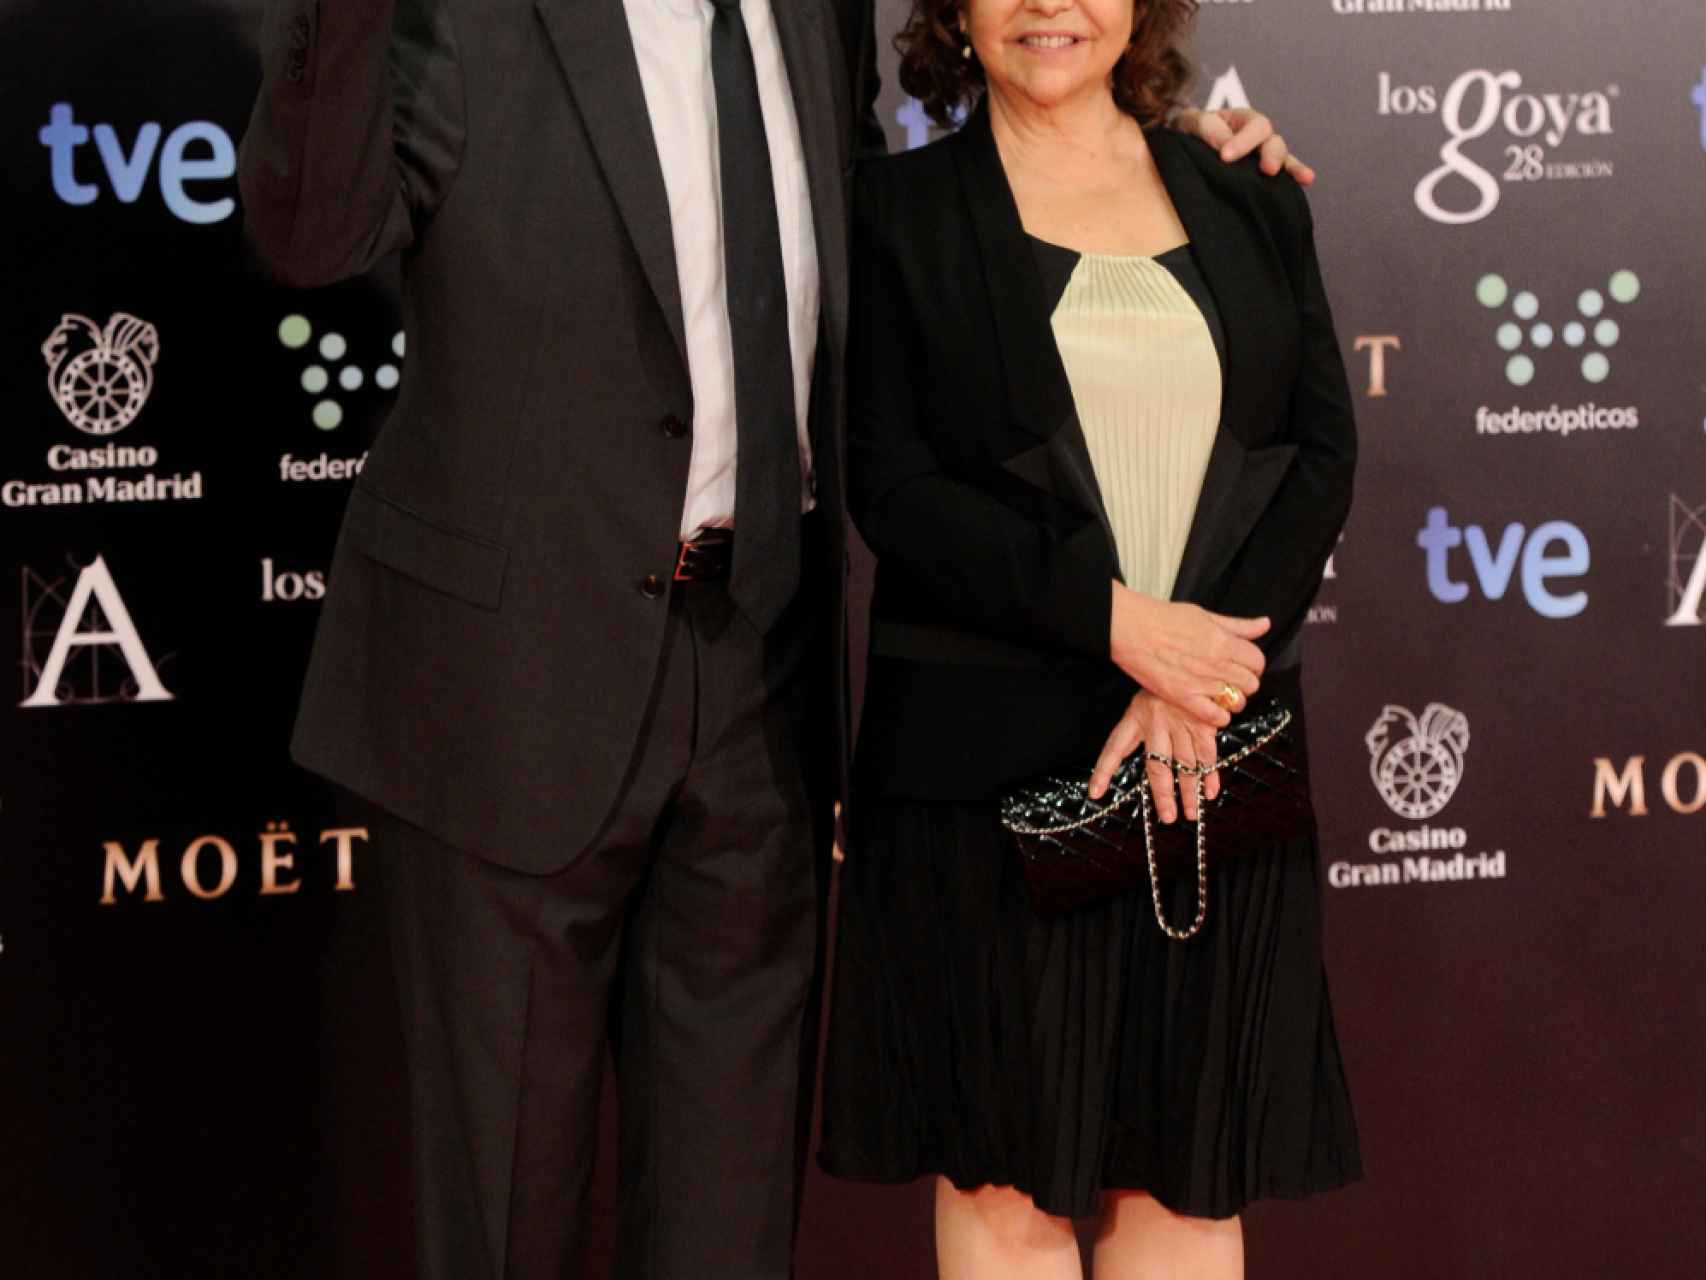 Fernando Trueba y Cristina Huete durante una edición de los premios Goya.